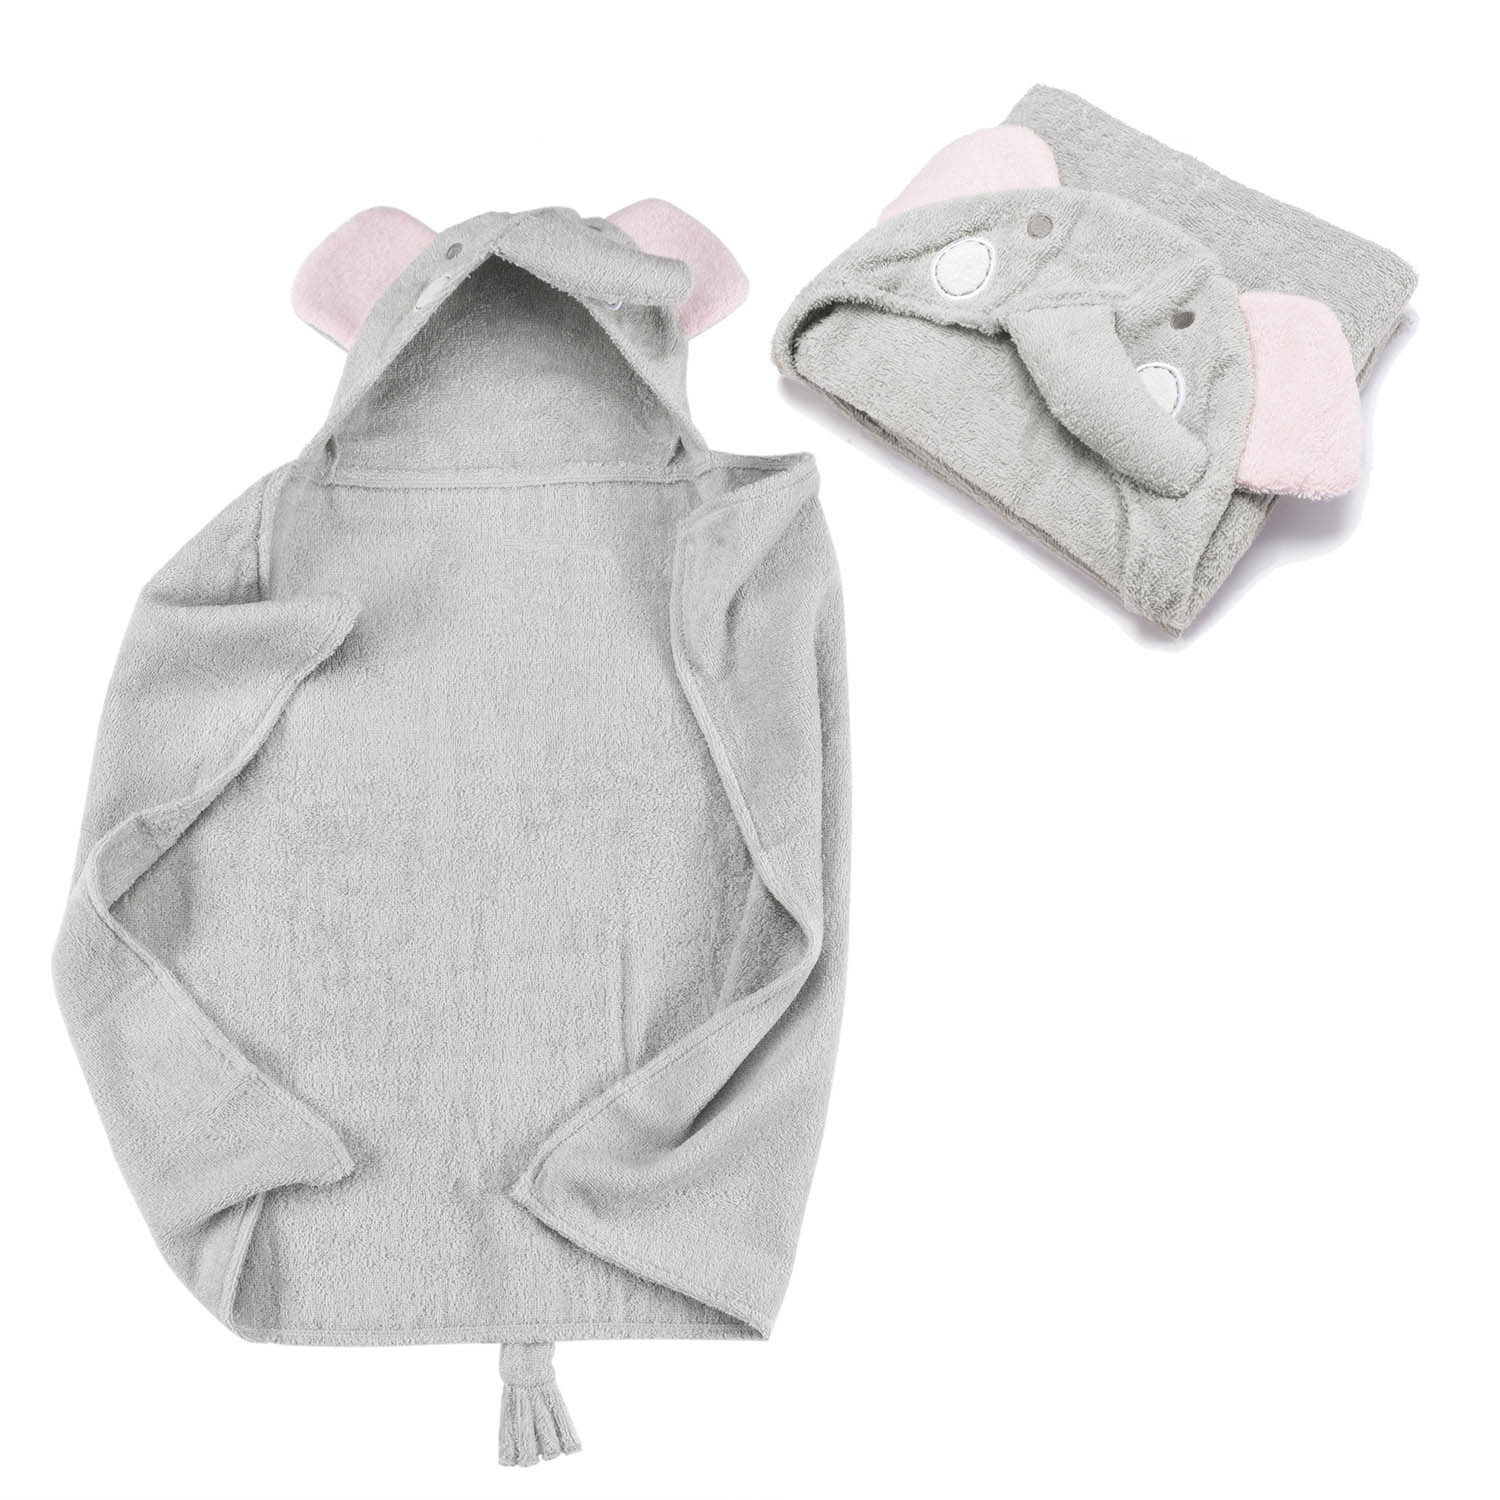 Gray,Size:S Kapuzenhandtuch Babyhandtuch Extra weich Atmungsaktiv für Neugeborene und Kleinkinder Baby Handtuch Kapuze Baby Badetuch und Kapuzenhandtuch Kinder 